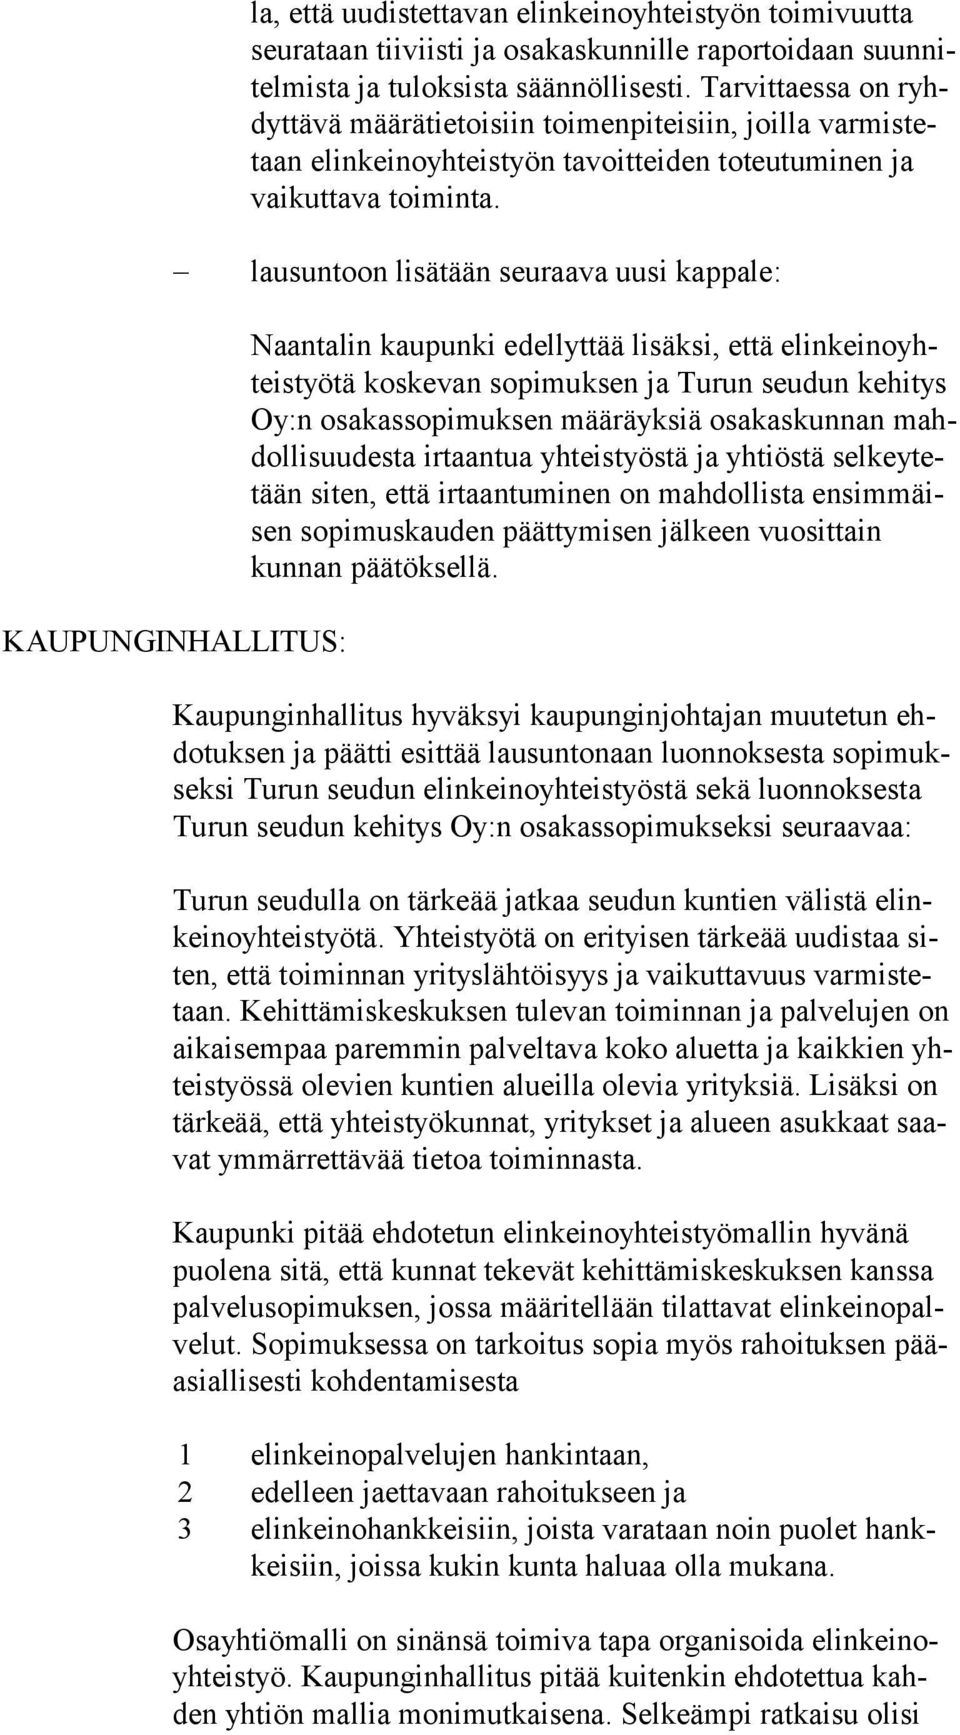 lausuntoon lisätään seuraava uusi kappale: KAUPUNGINHALLITUS: Naantalin kaupunki edellyttää lisäksi, että elin kei no yhteis työ tä koskevan sopimuksen ja Turun seudun kehitys Oy:n osakassopimuksen